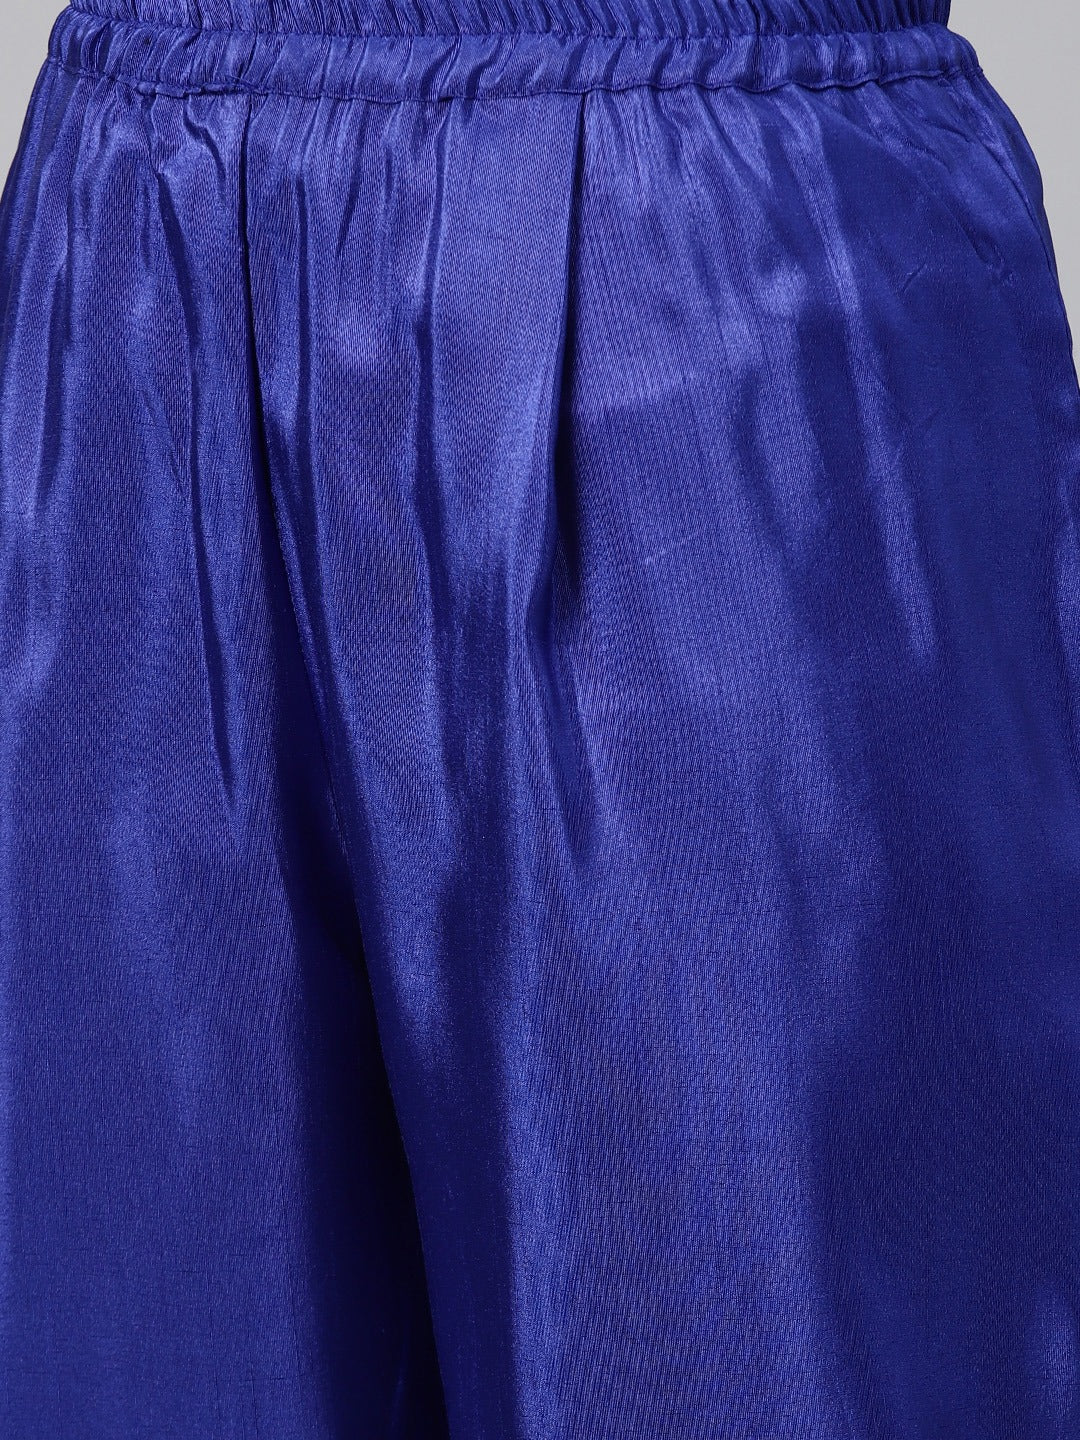 Women's  Royal Blue Poly Silk Salwar Suit Set- Ahalyaa